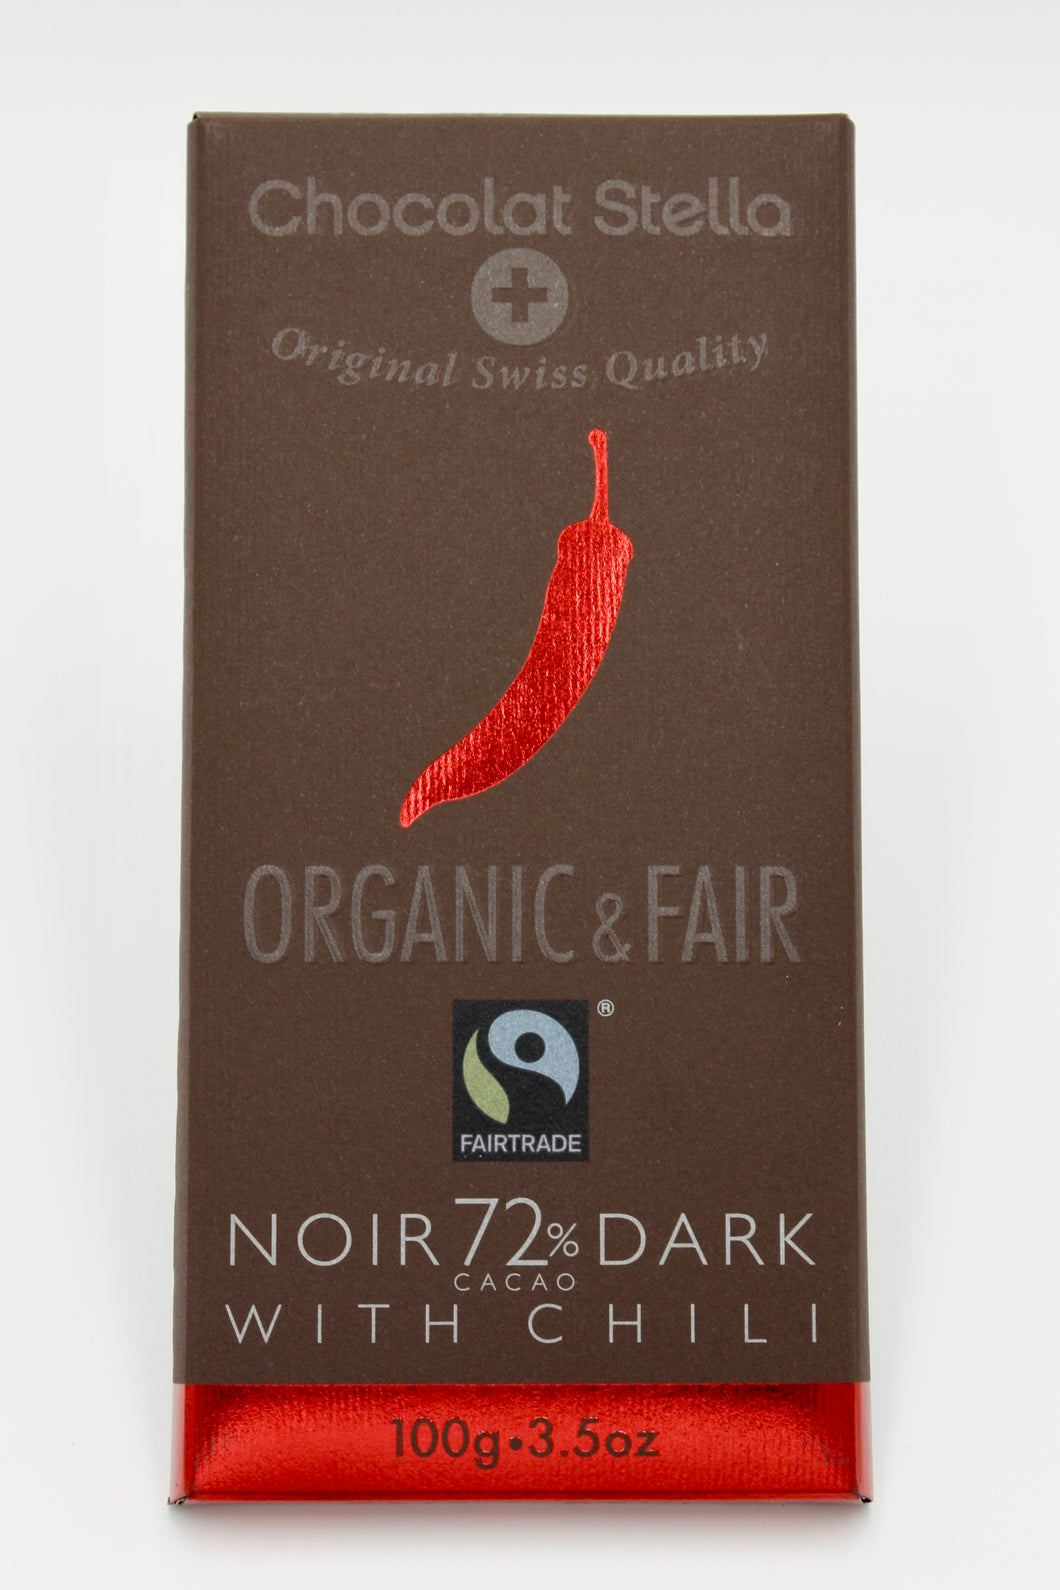 Organic Swiss Dark Chocolate Bar with Chili - 72% Cacoa